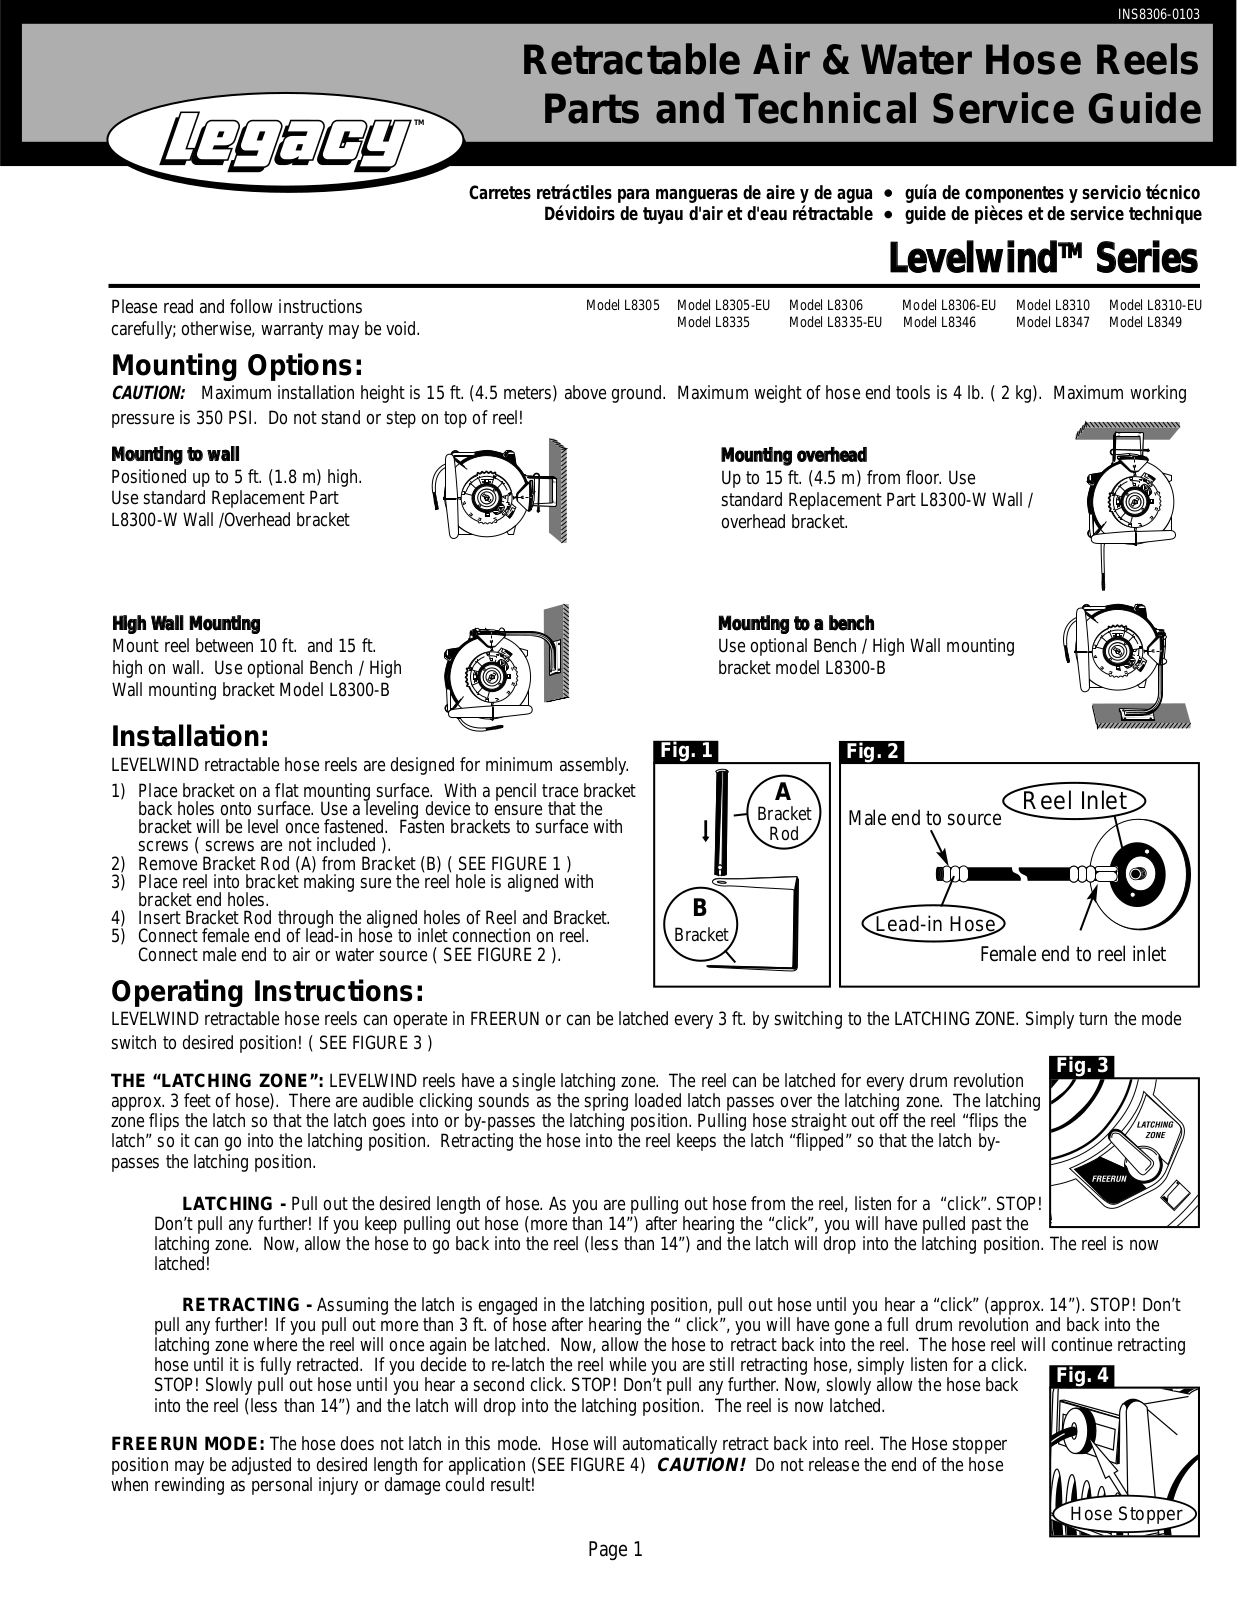 Legacy L8305, L8305-EU, L8306, L8306-EU, L8310 Parts and Technical Service Guide